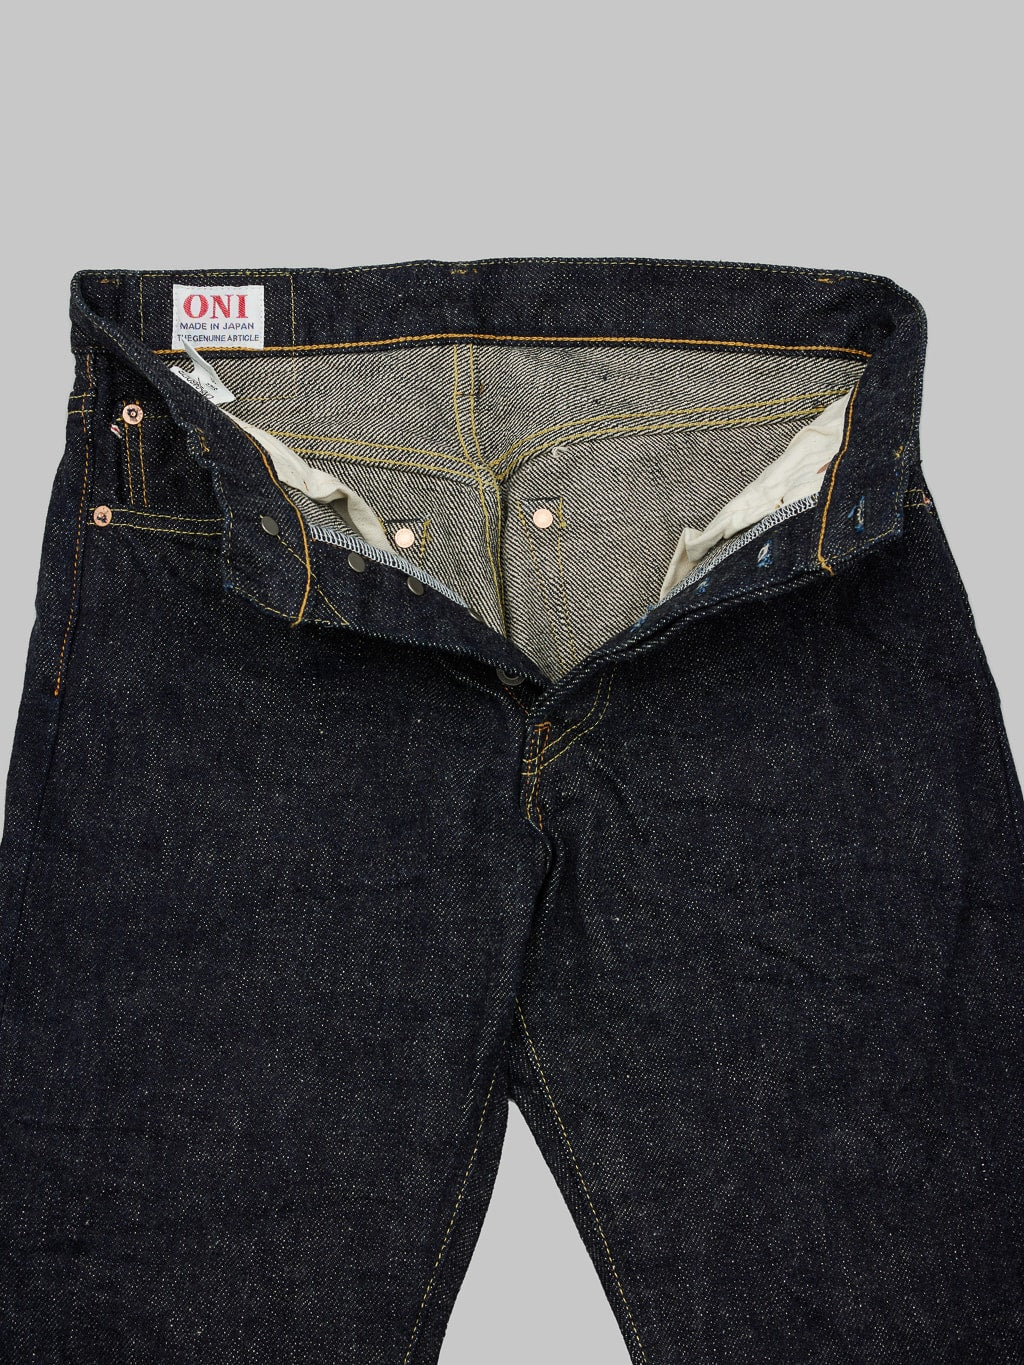 ONI Denim 246DIZR Dark Indigo Secret Denim Jeans interior fabric